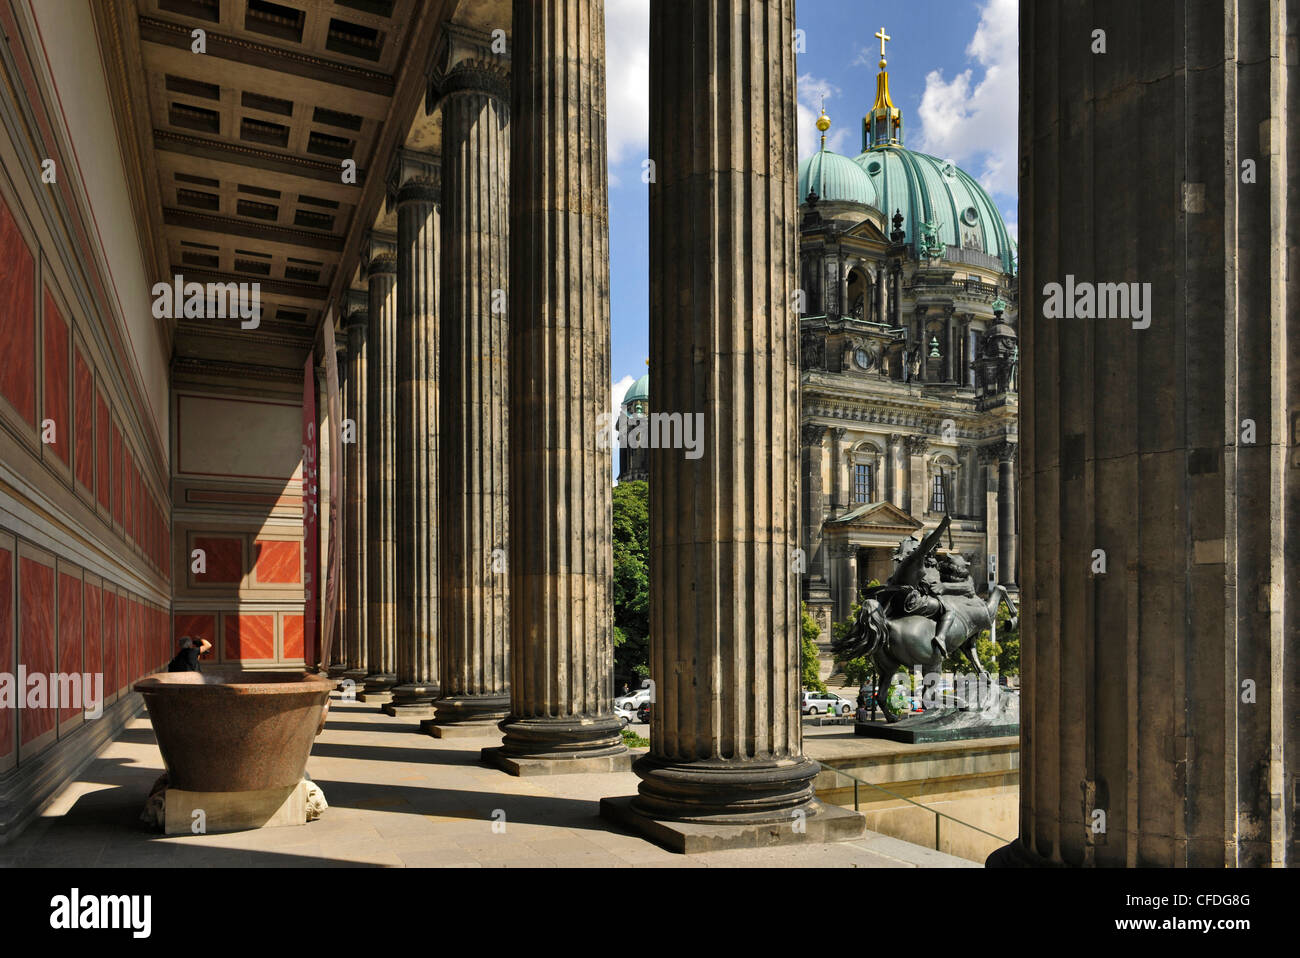 Vieux musée et de la cathédrale de Berlin, Berlin, Germany, Europe Banque D'Images